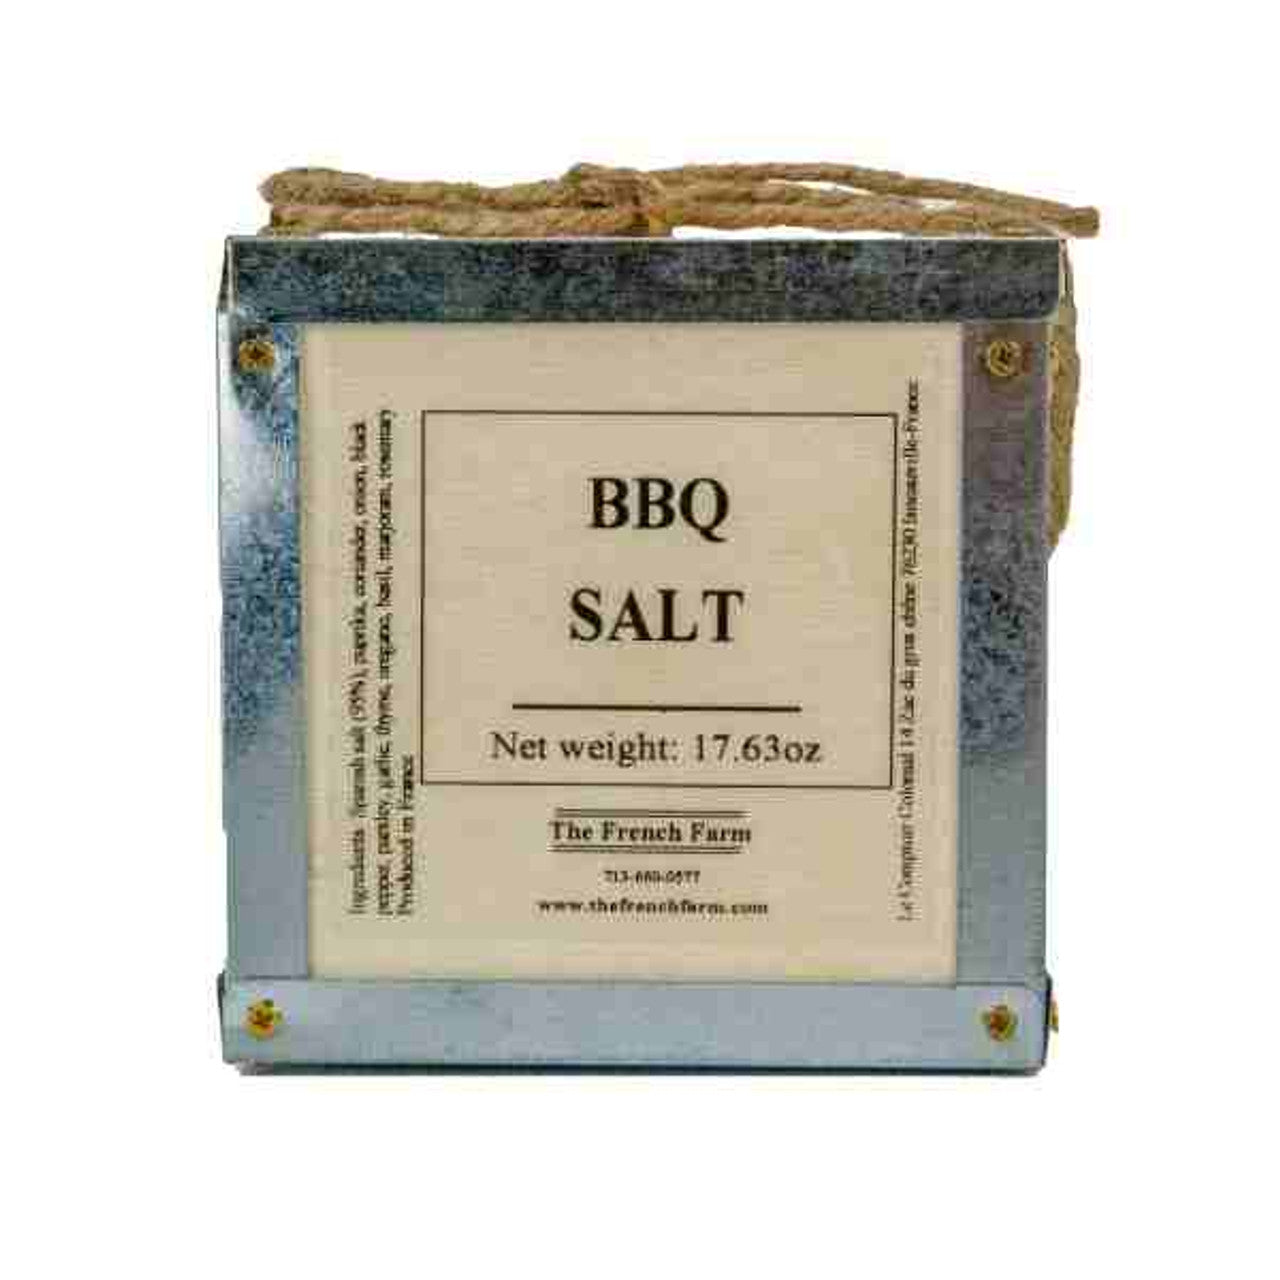 BBQ Salt Box